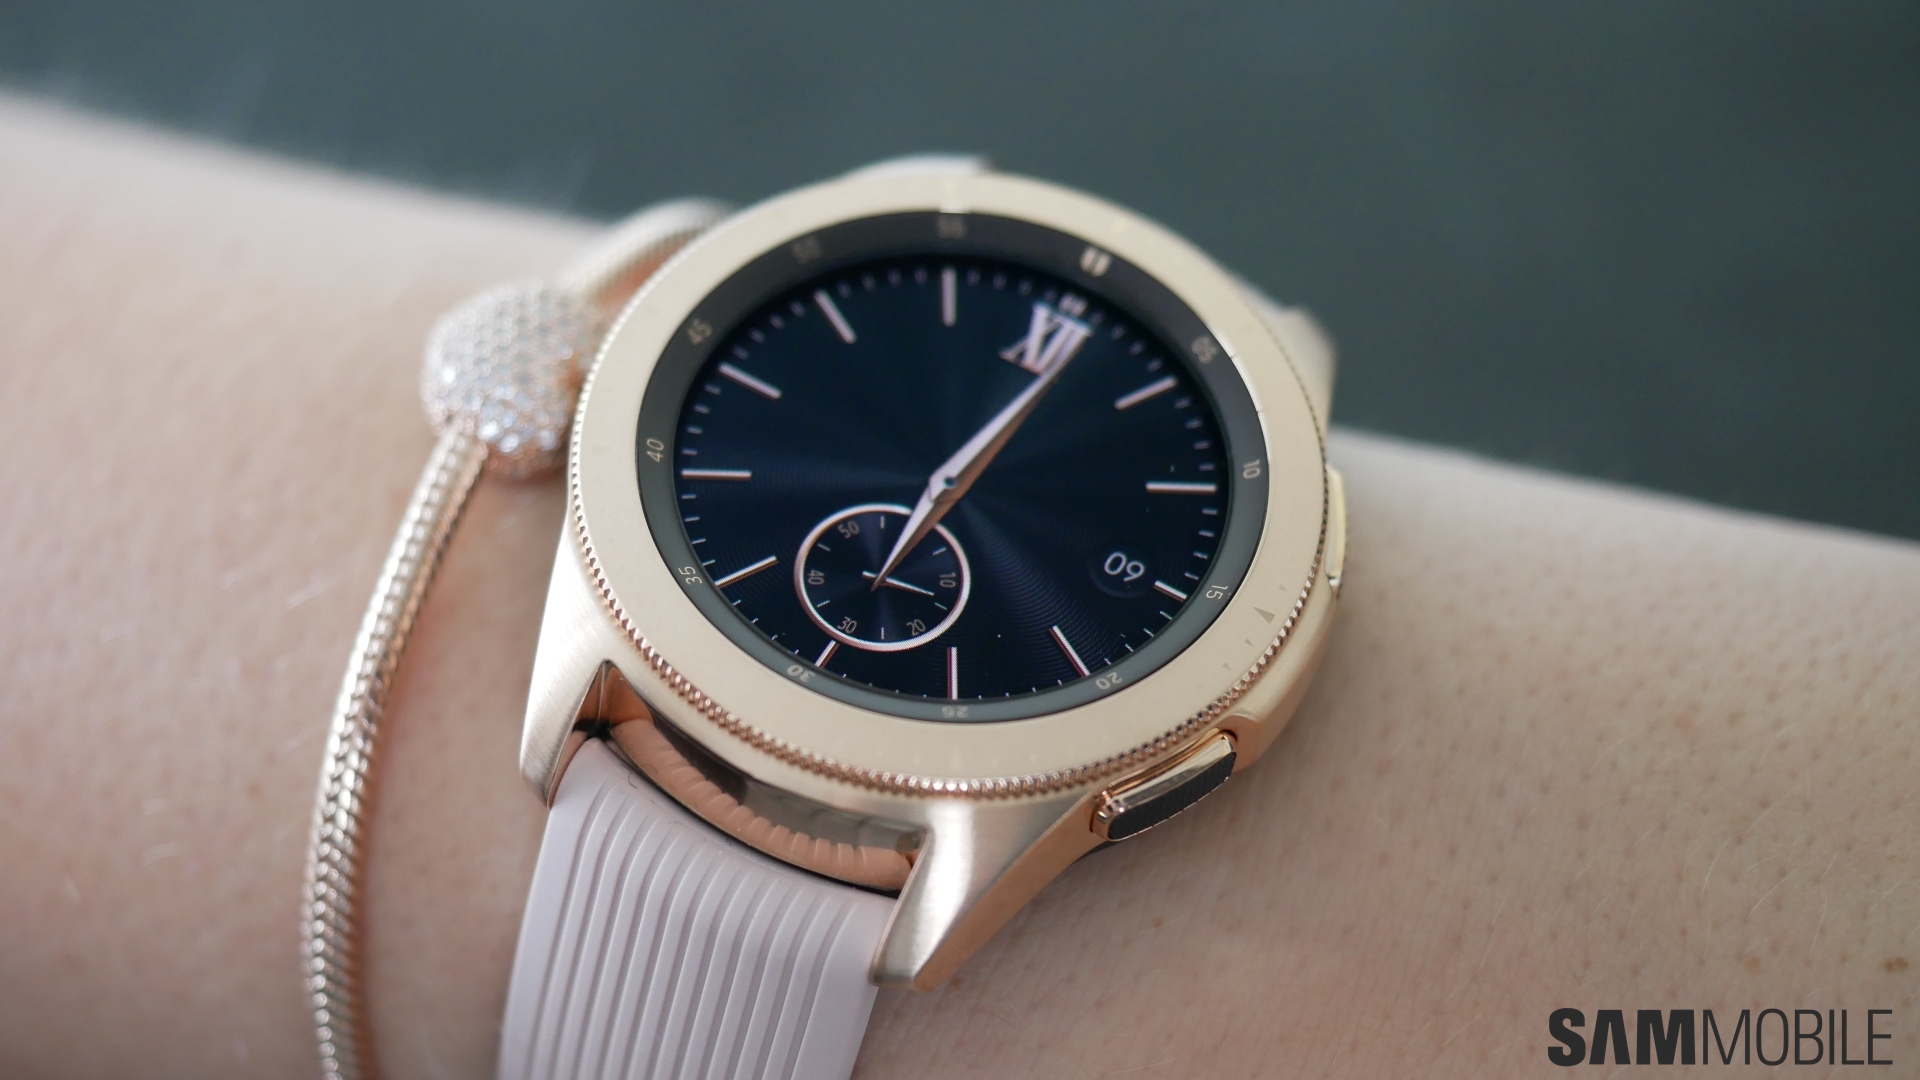 Samsung Watch 42mm Купить В Москве